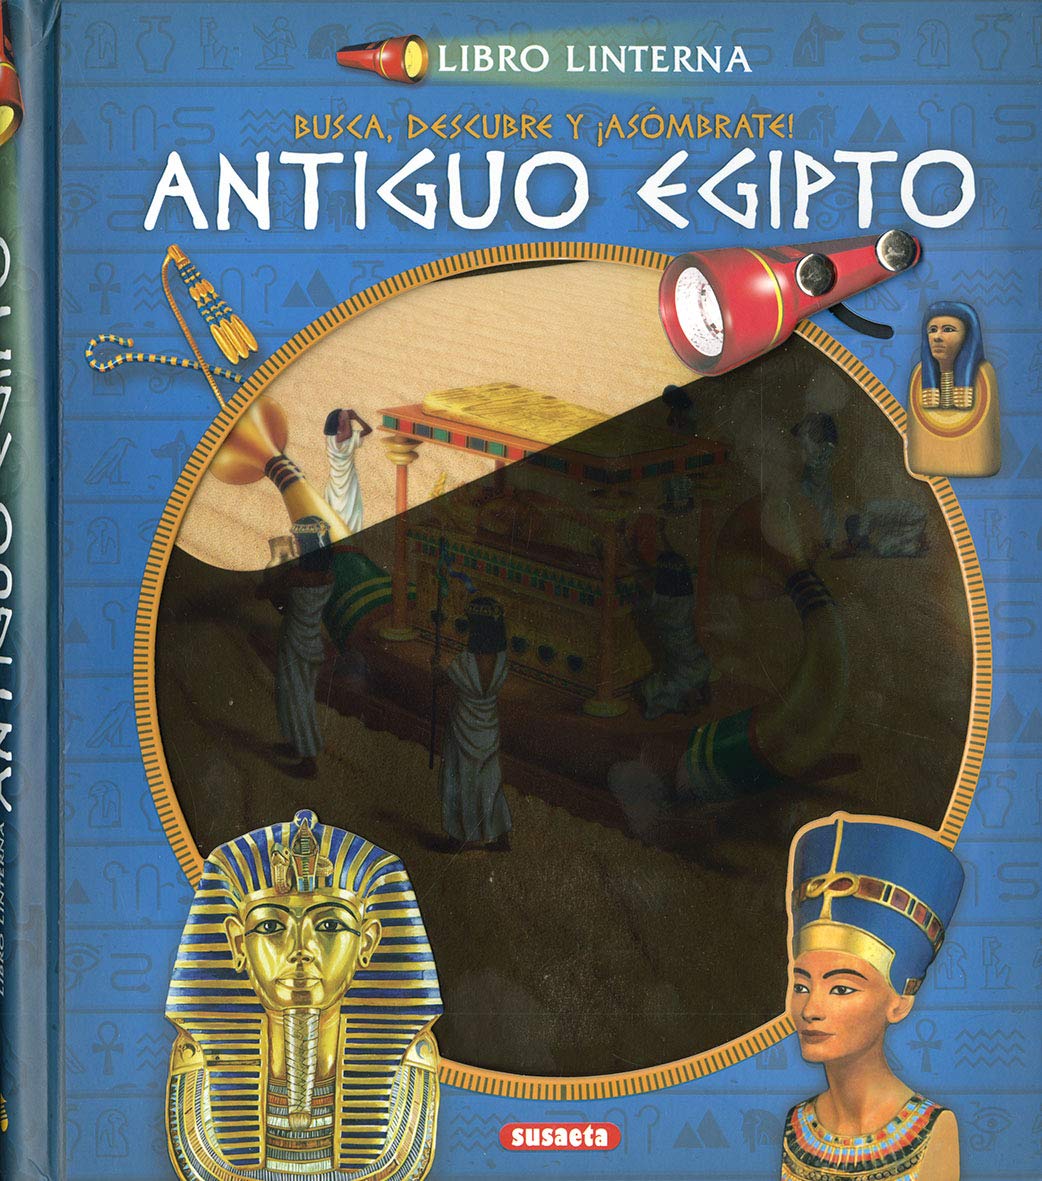 pubertad trolebús libro de bolsillo EL ANTIGUO EGIPTO. Libro Linterna - La Casa Curiosa